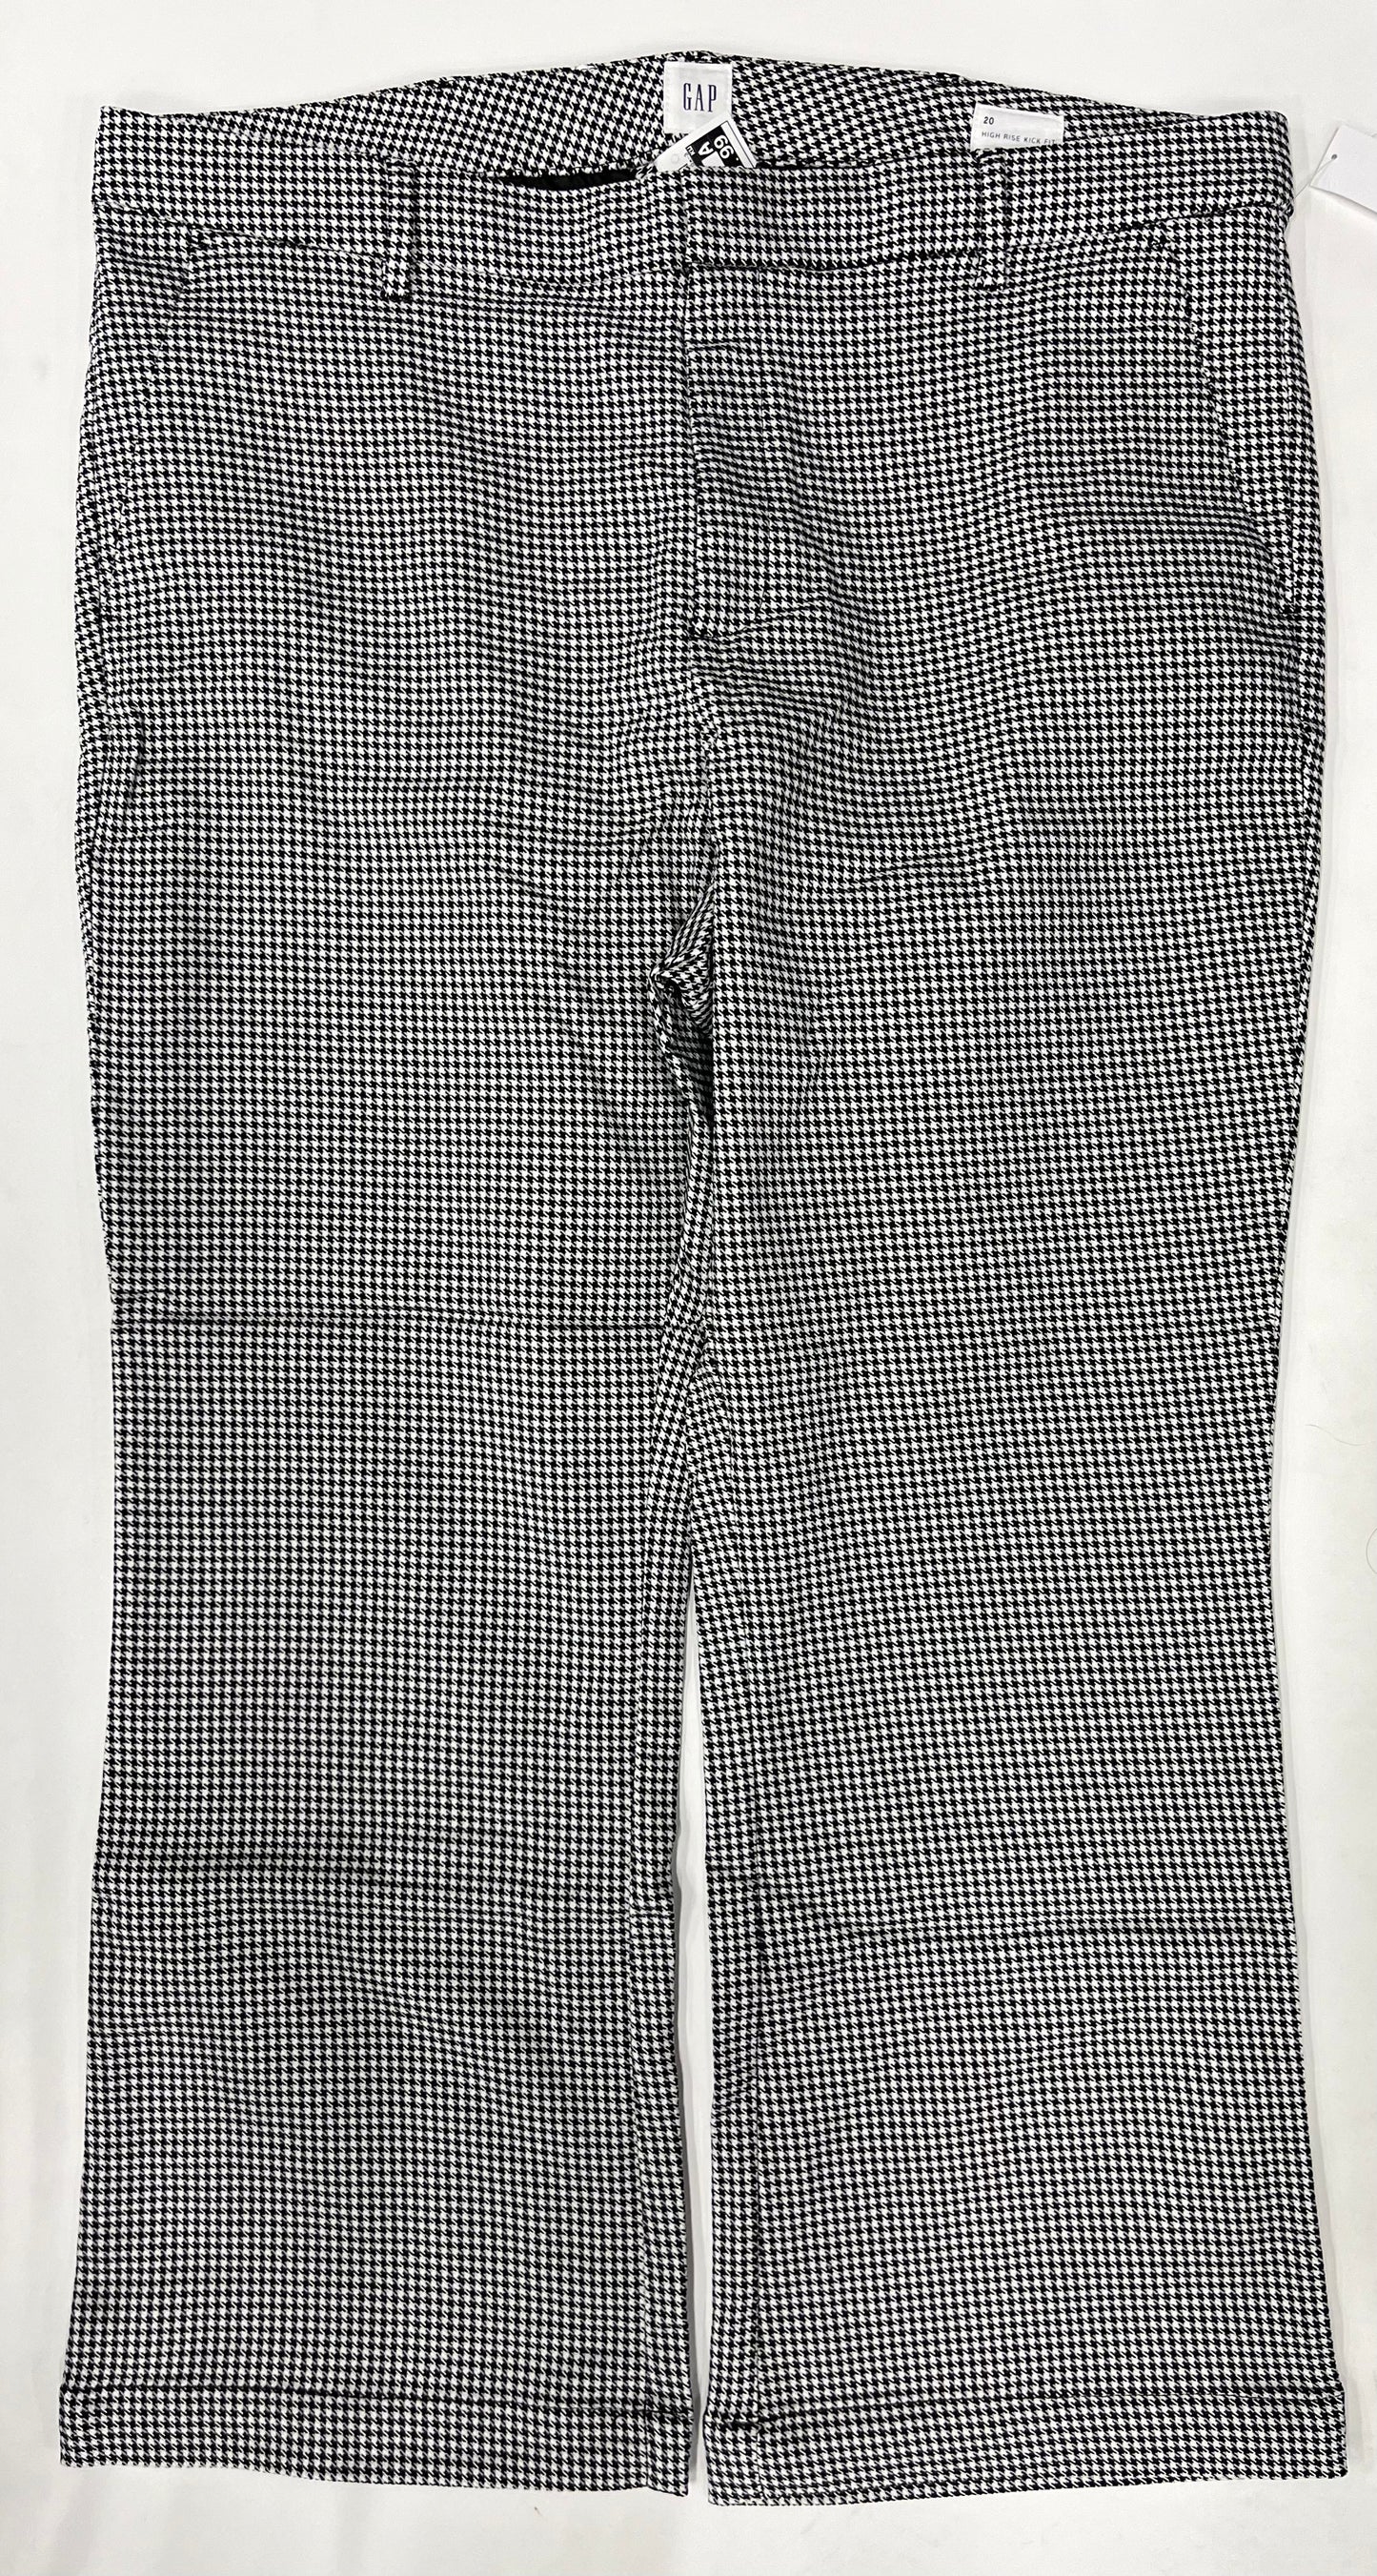 Pants Work/dress By Gap NWT Size: 20